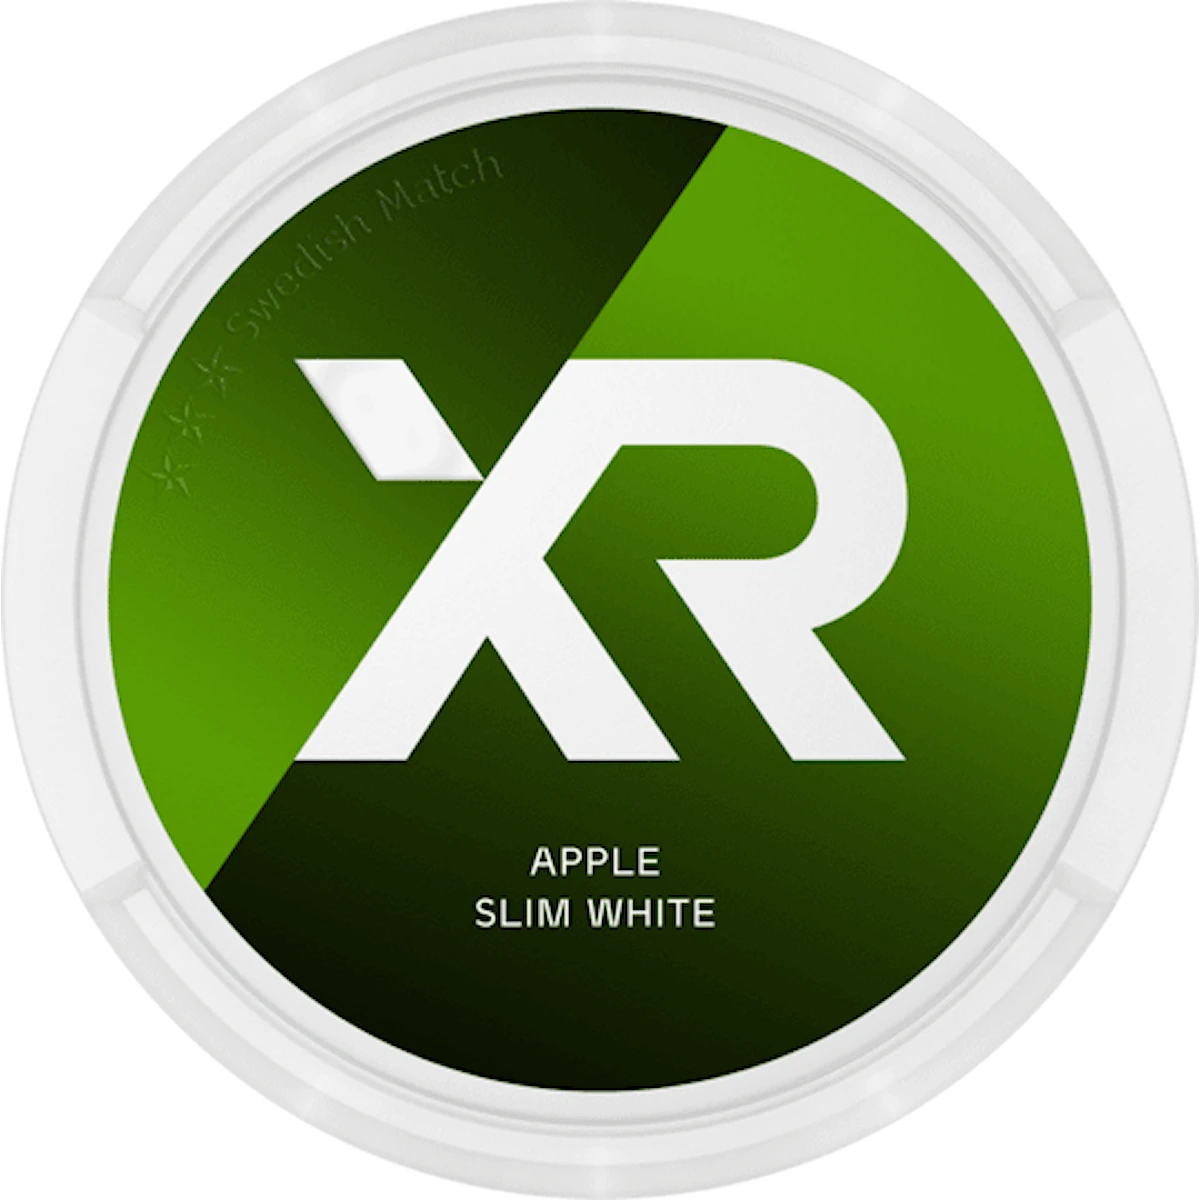 XR Apple Slim White Portion